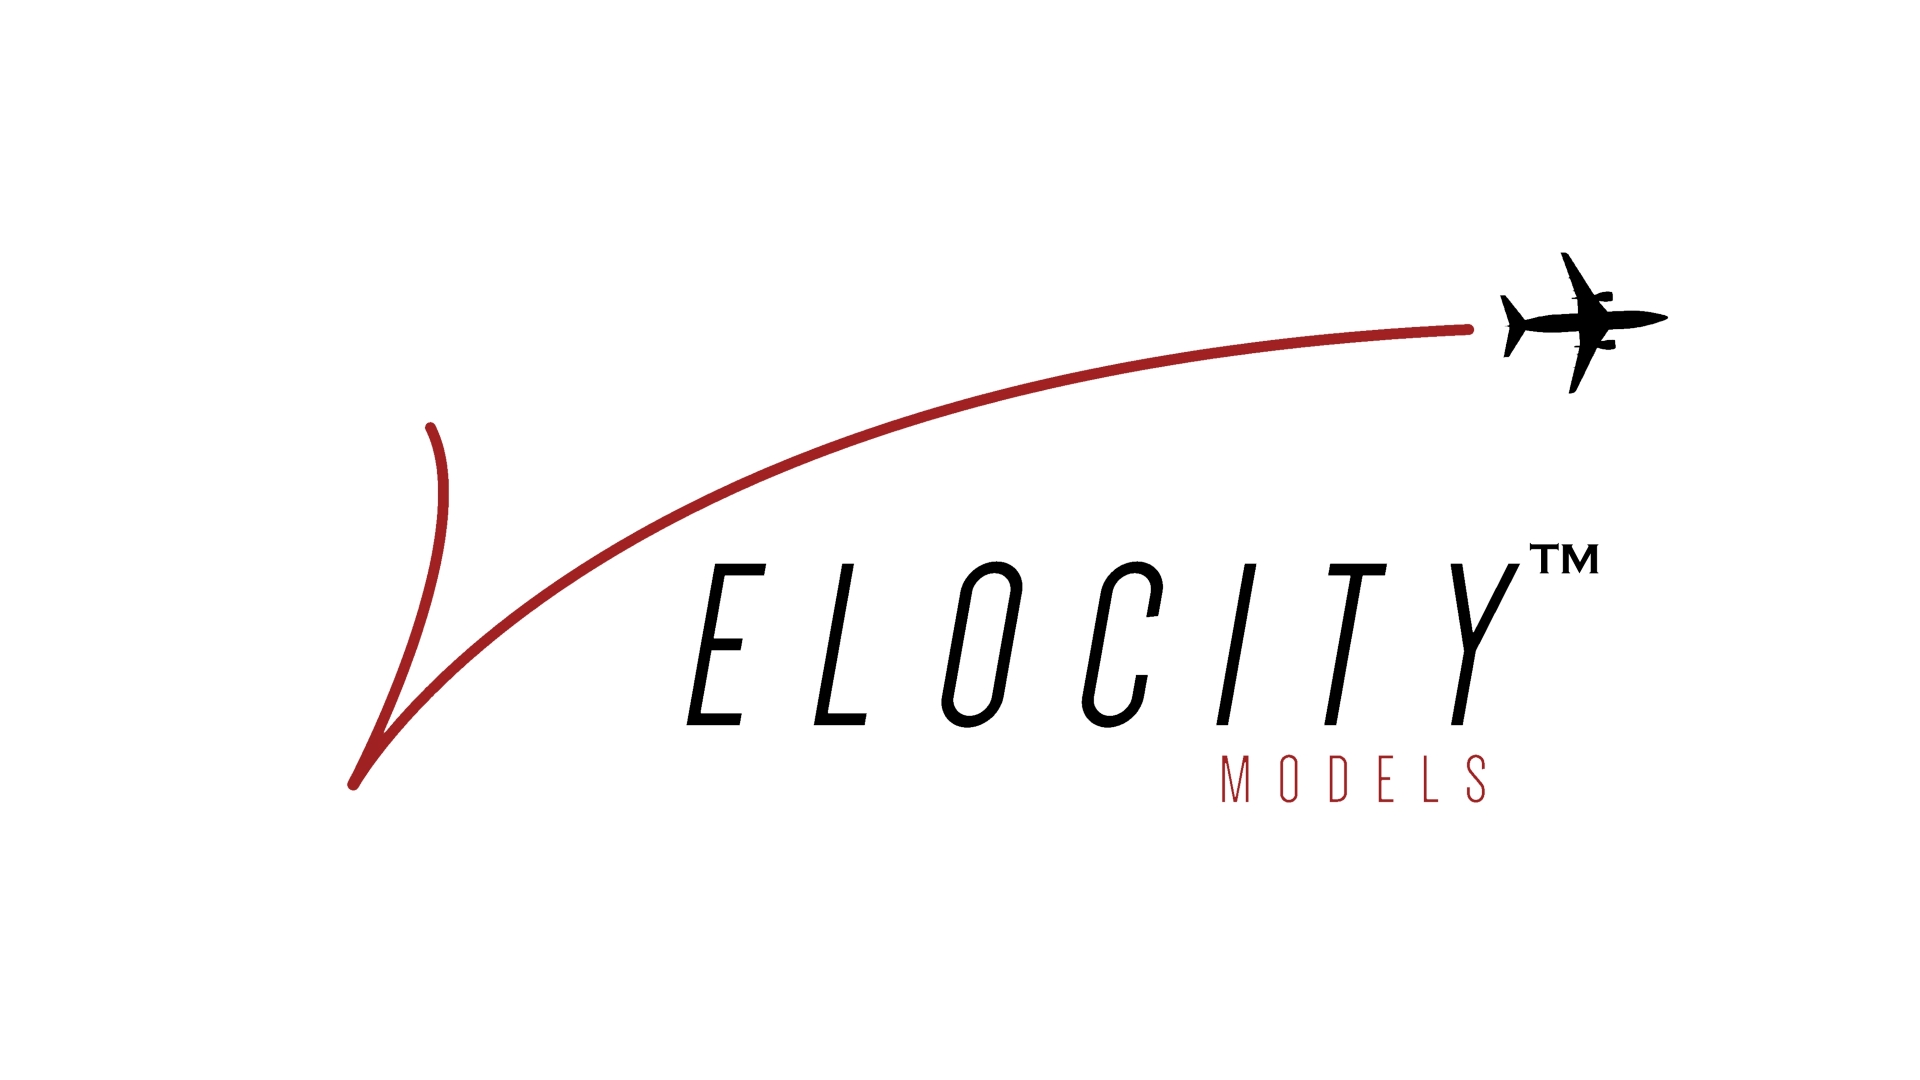 Velocity Models
The logo of Velocity Models
Keywords: Velocity Models 1:400